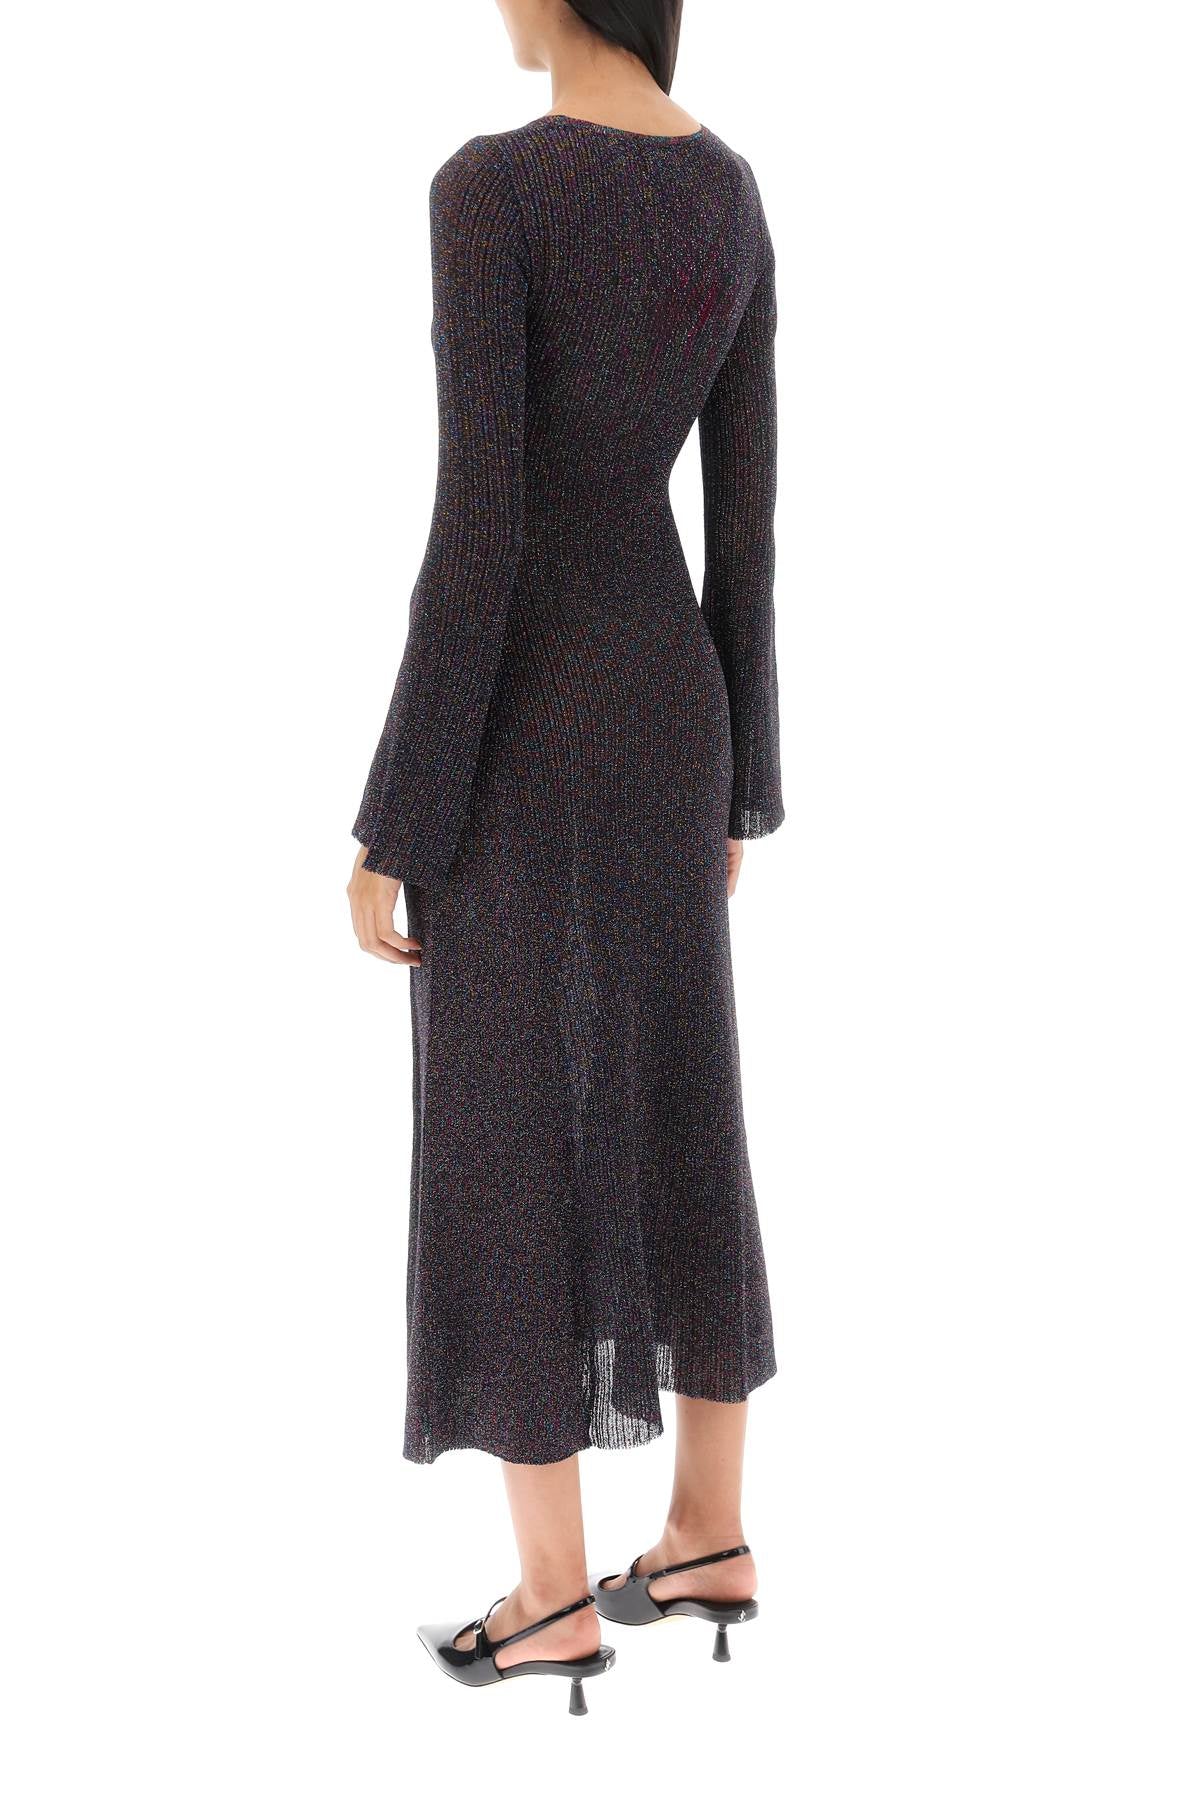 Shop Ganni Lurex Knit Midi Dress In Metallic, Black